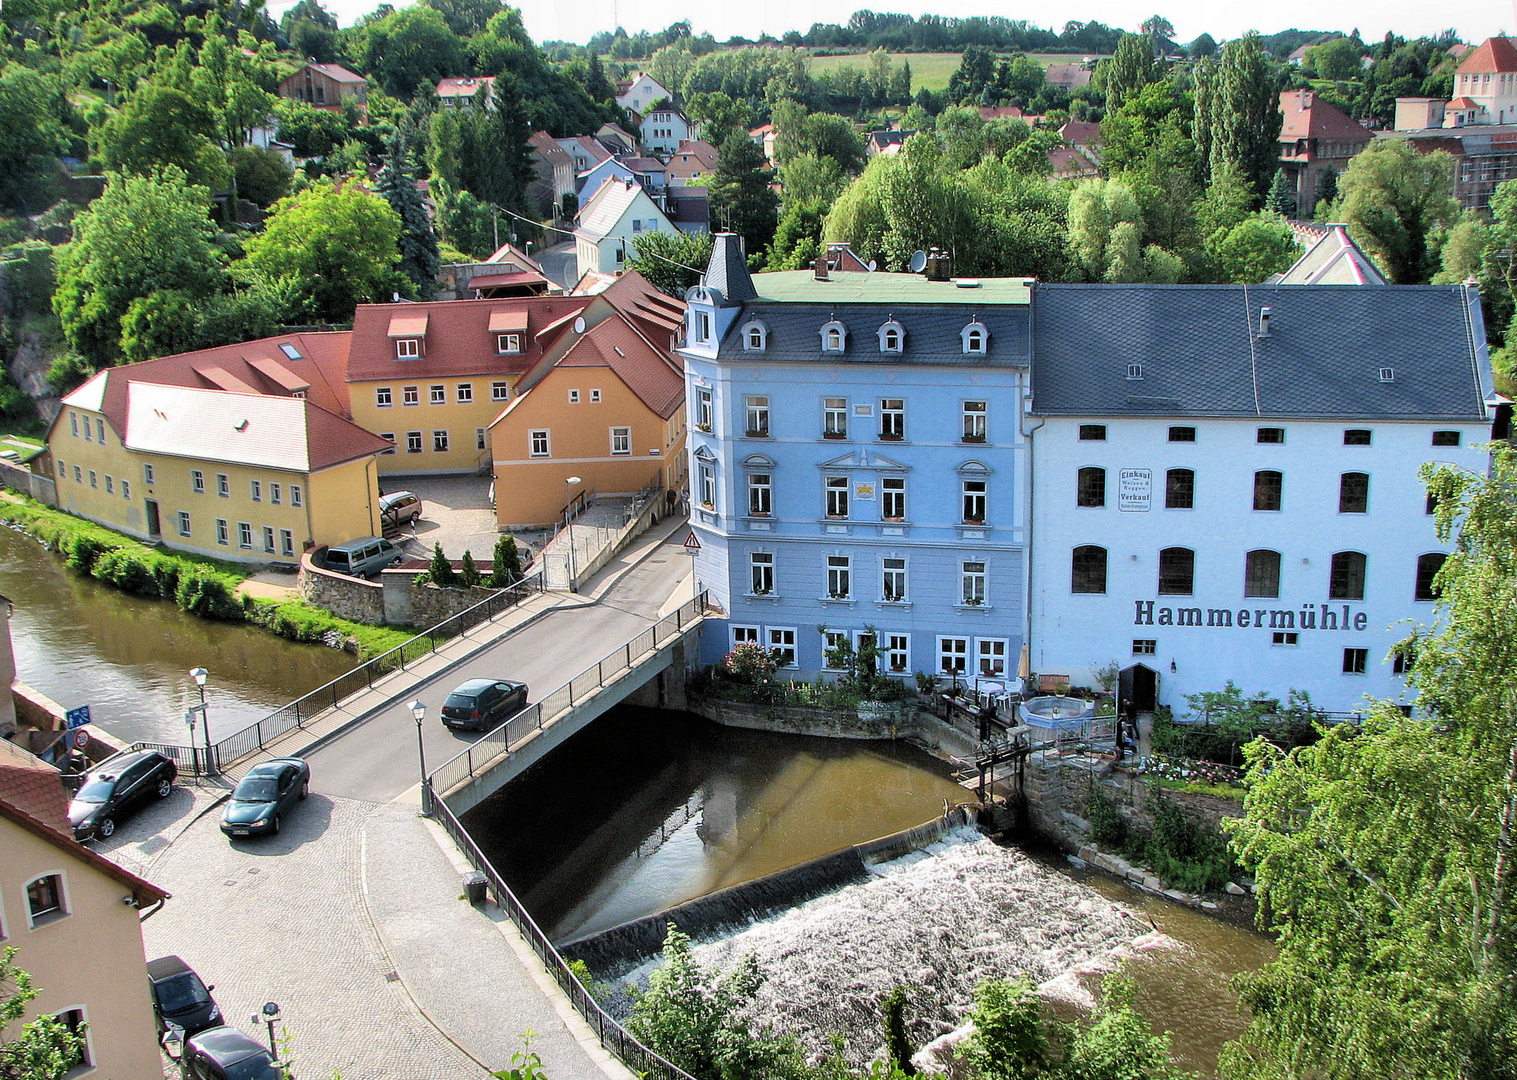 Hammermühle in Bautzen